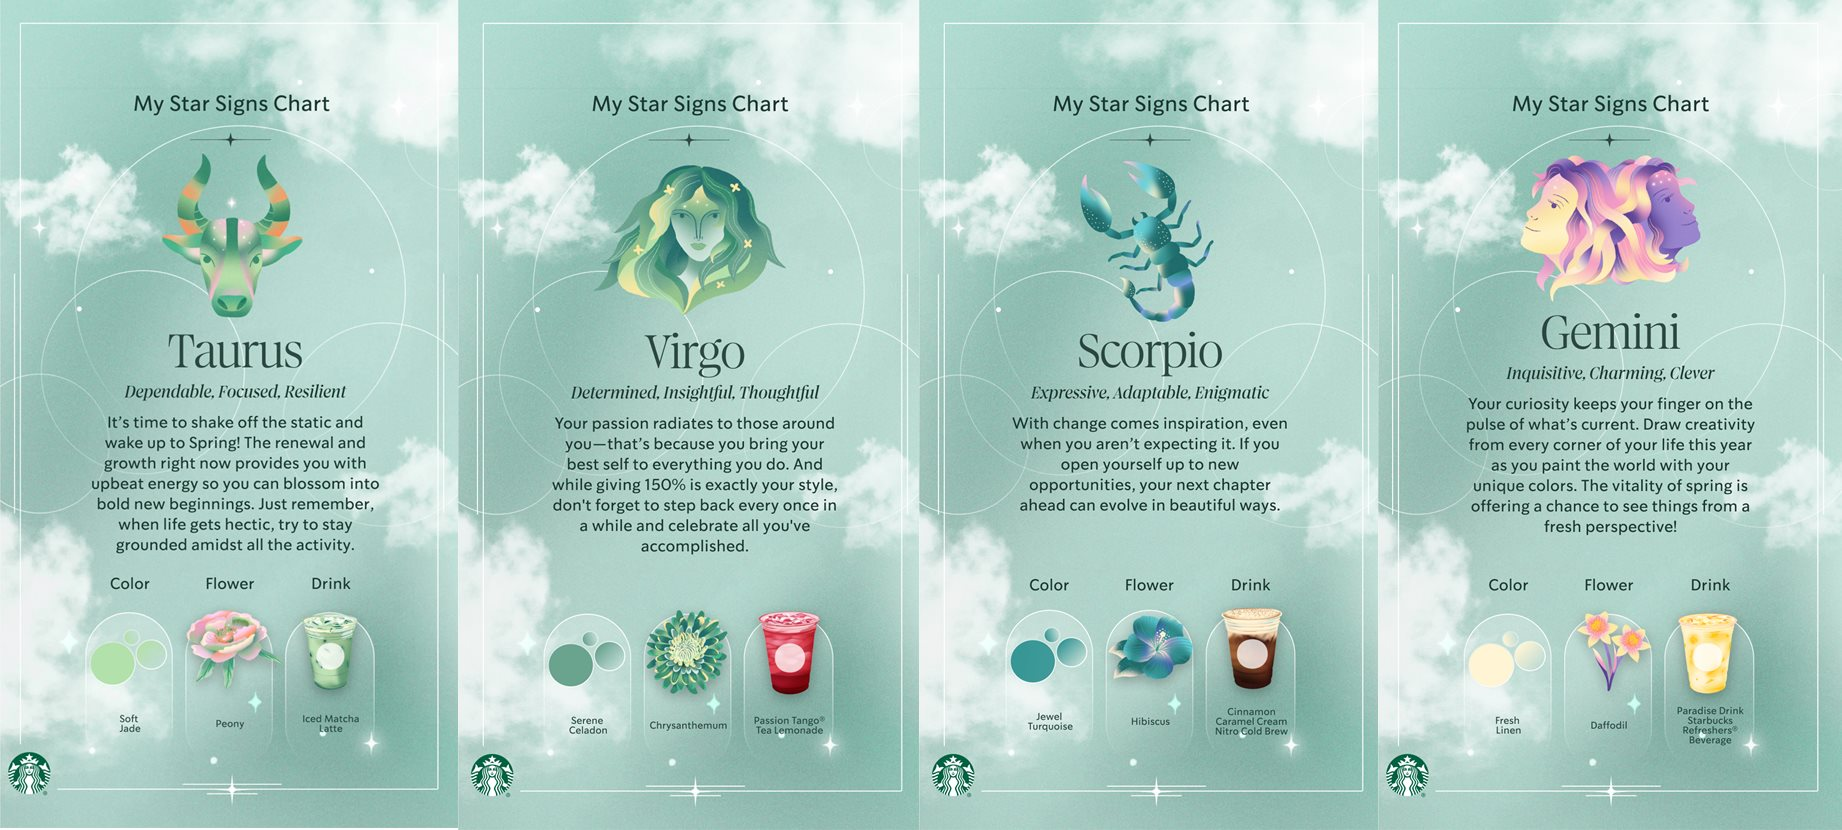 Uống cà phê &quot;hệ tâm linh&quot;: Starbucks bắt tay ứng dụng bói bài Tarot, cho phép người dùng gọi thức uống và xem tử vi theo cung hoàng đạo - Ảnh 3.